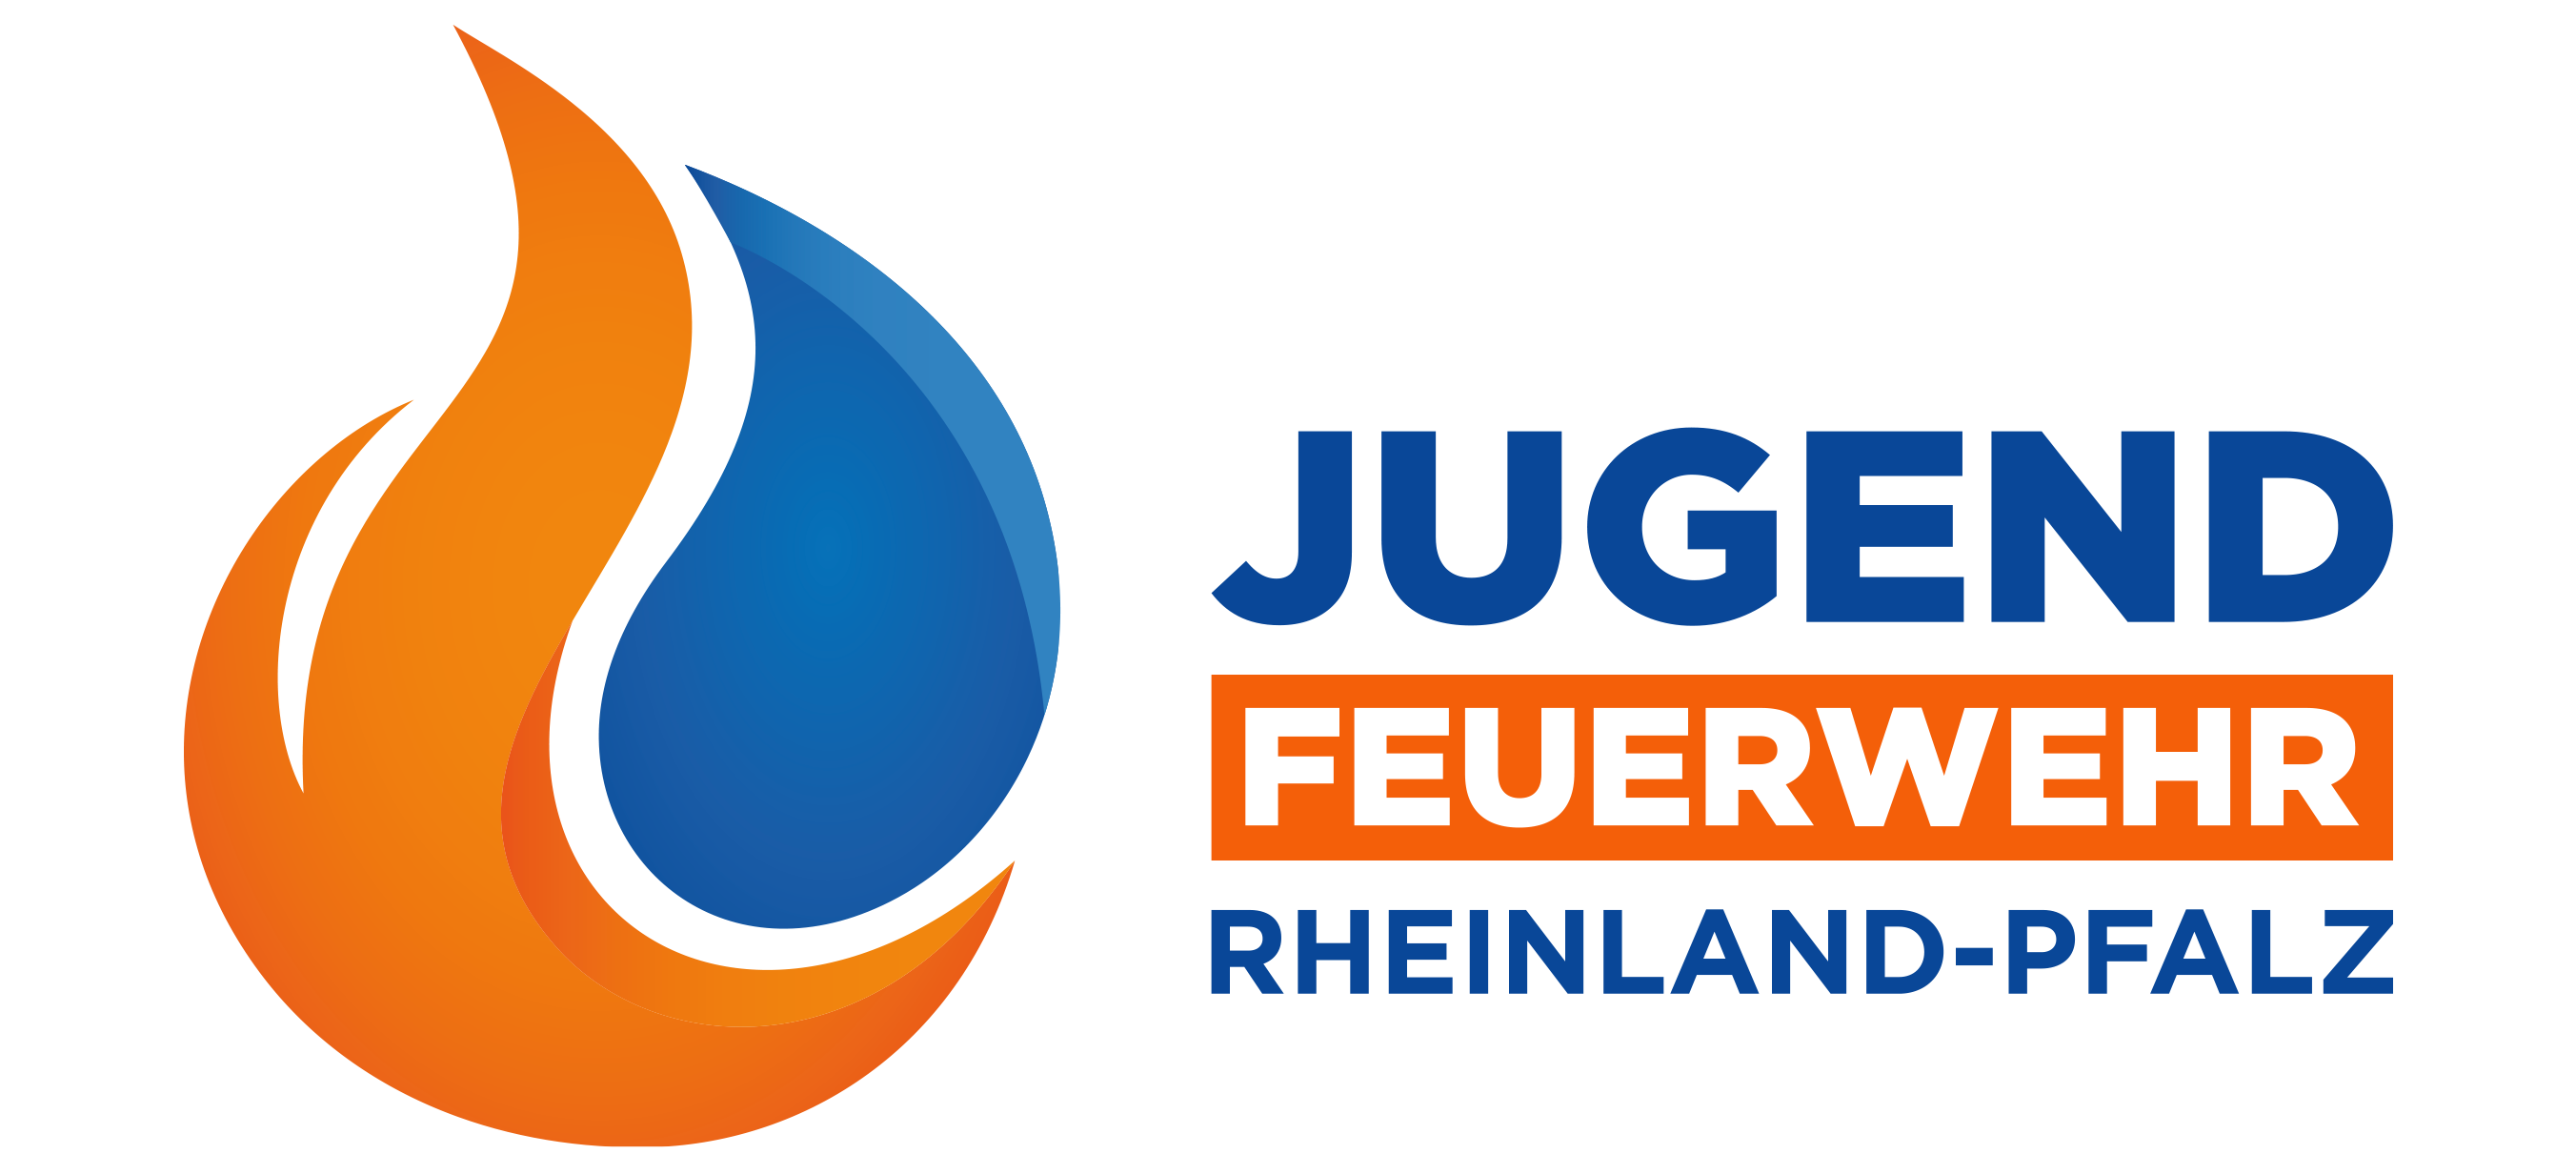 Jugendfeuerwehr Rheinland-Pfalz Hilfe